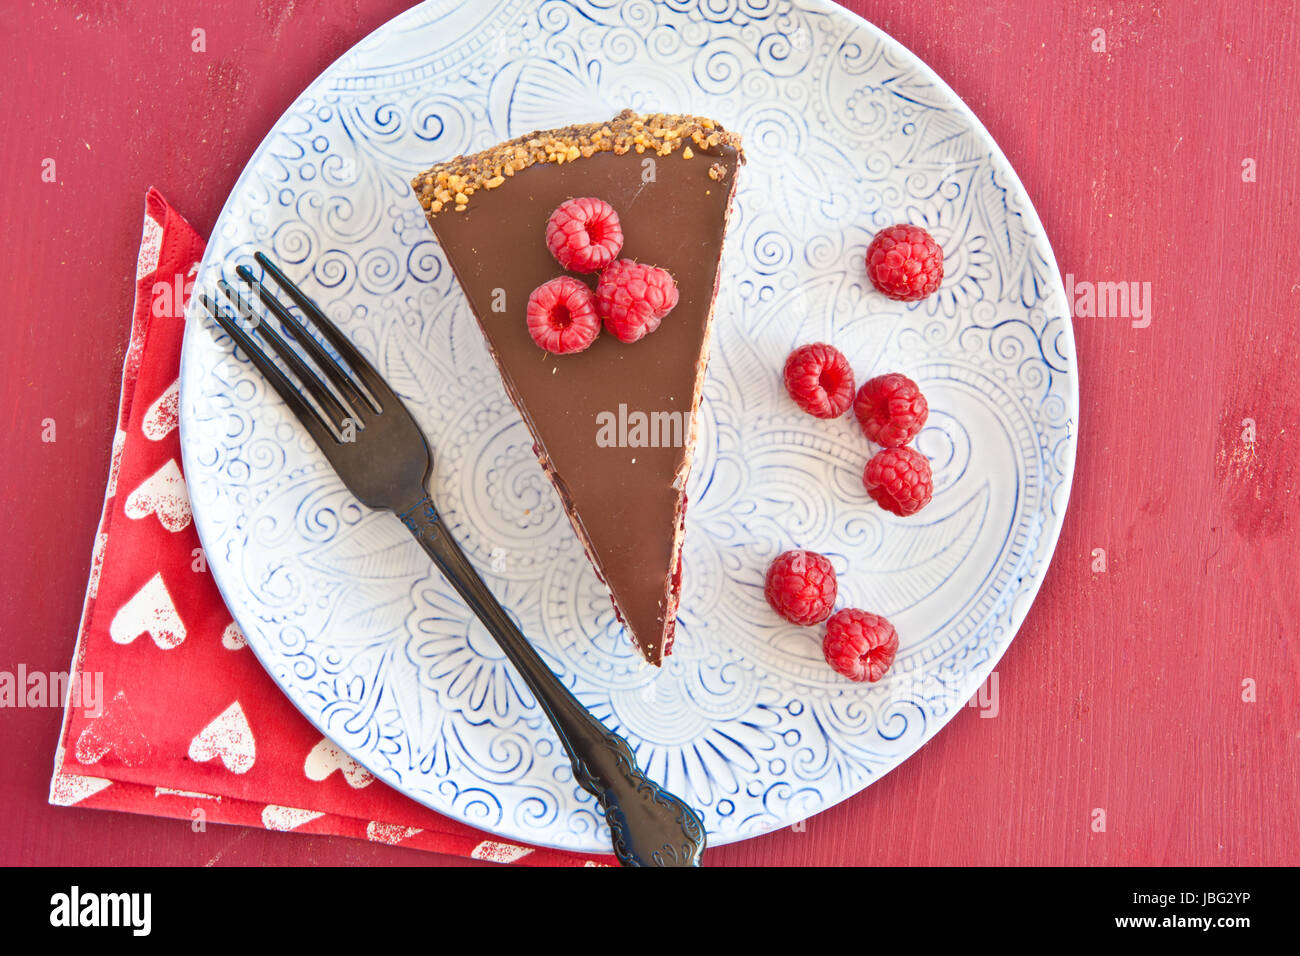 Ein Stueck Torte mit roten Fruechten und Schokolade Stock Photo